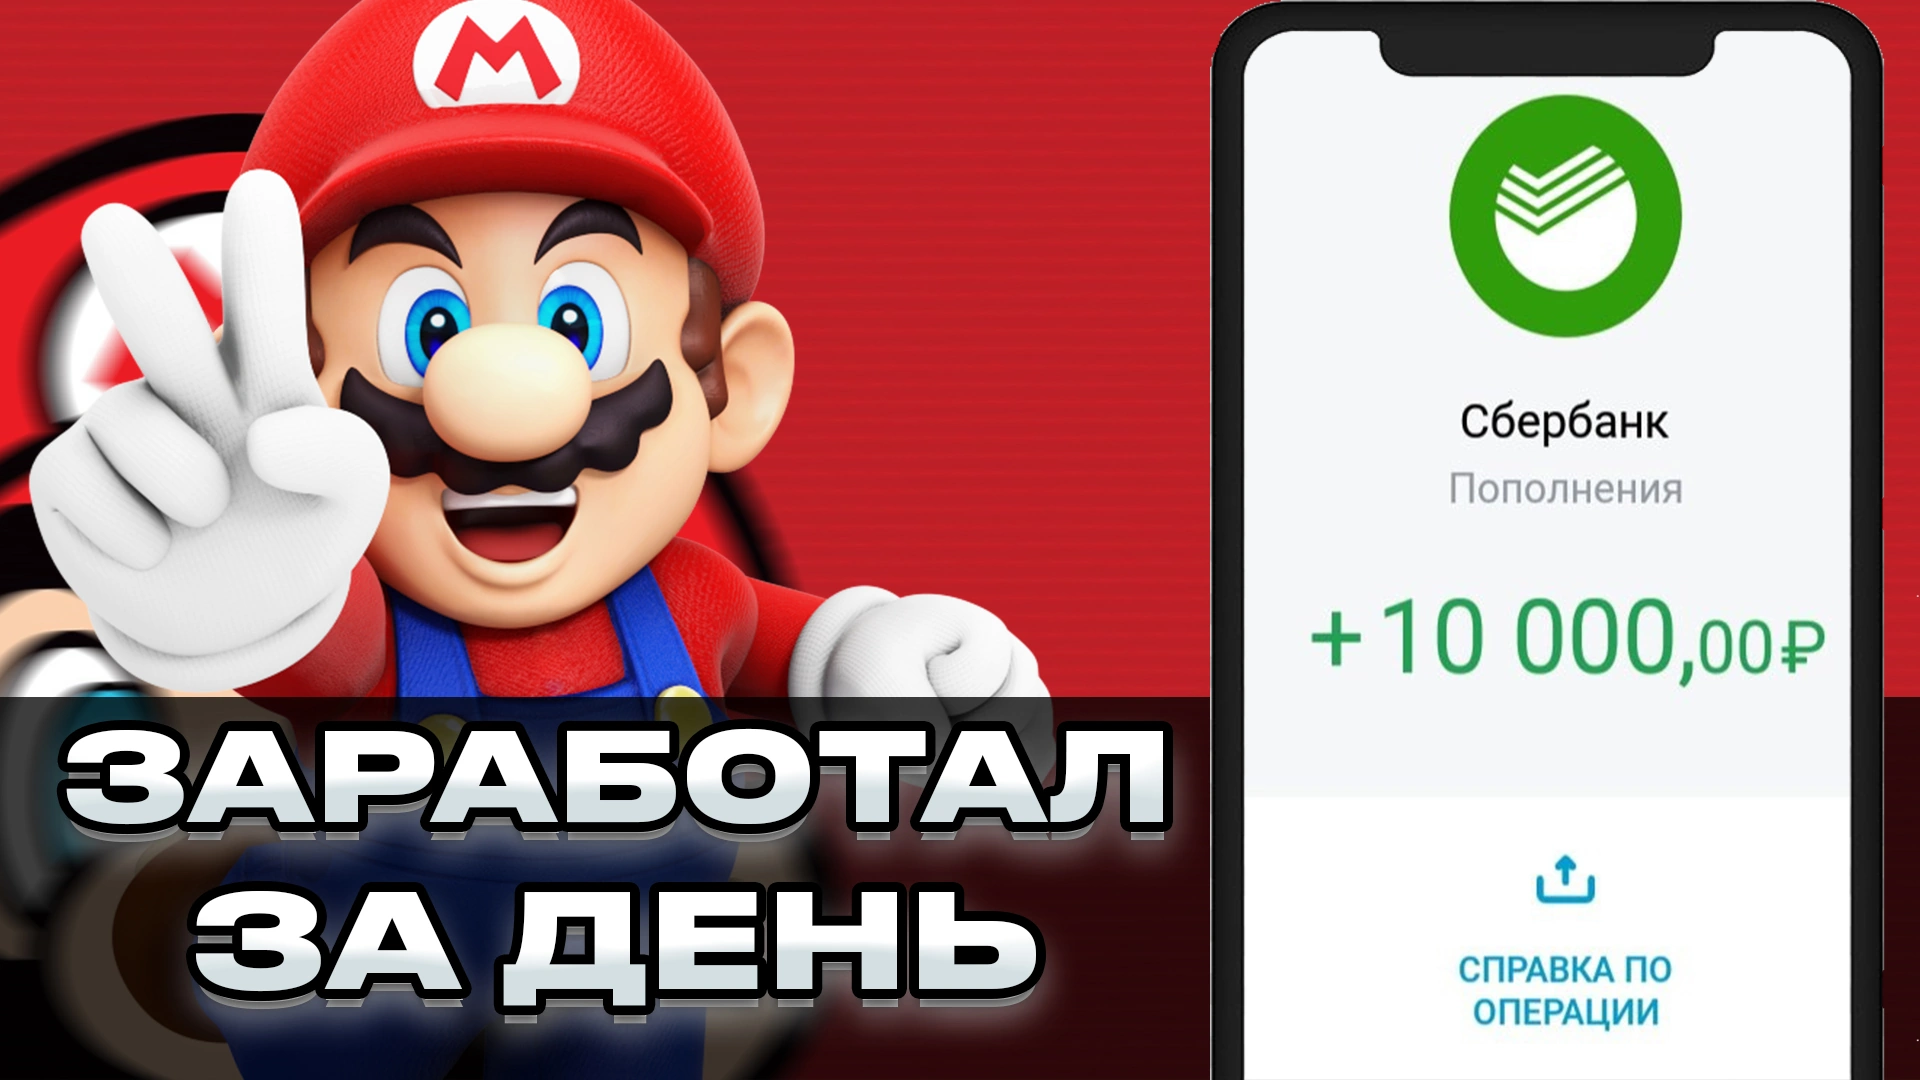 Mario Cash - как заработать играя в игру. Отзывы и обзор